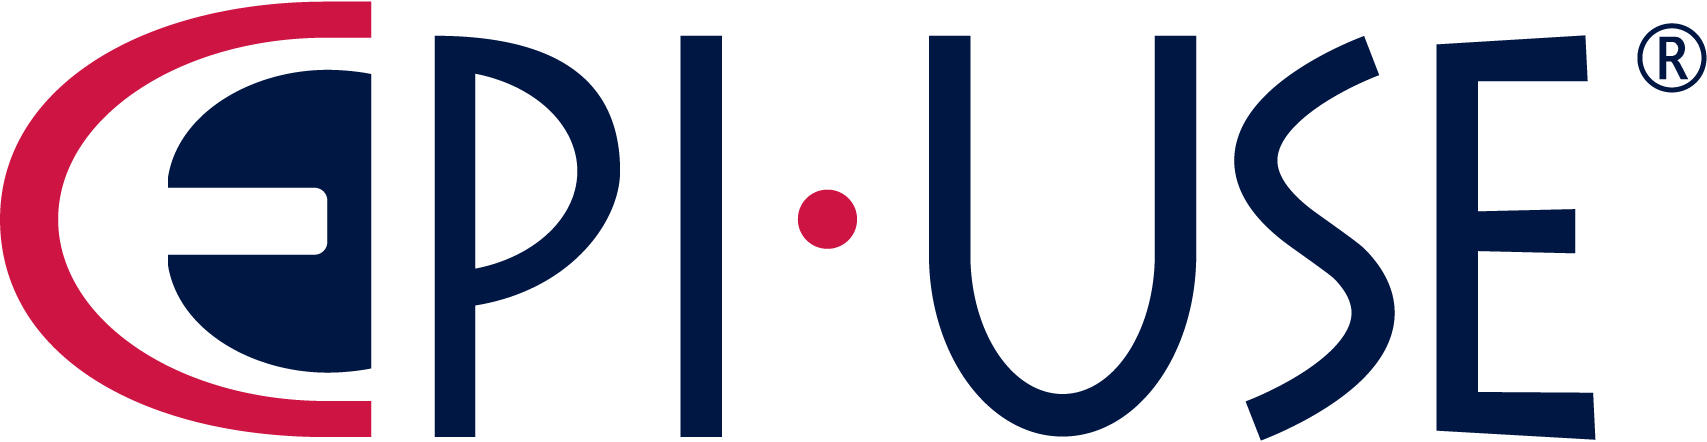 EPI-USE-logo